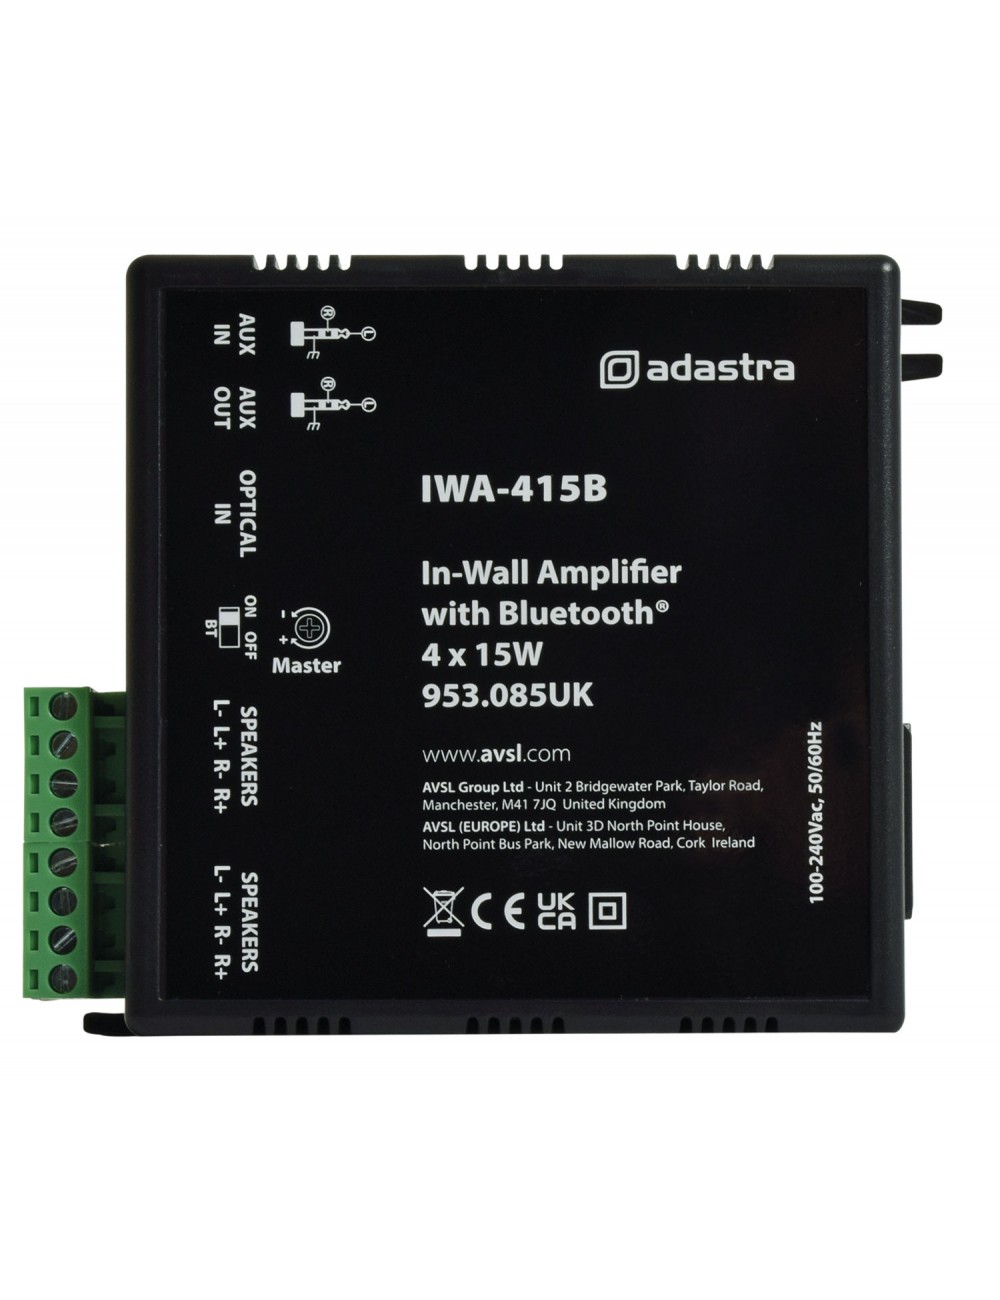 Wall Amplifier with Bluetooth Adastra IWA-415B - 3